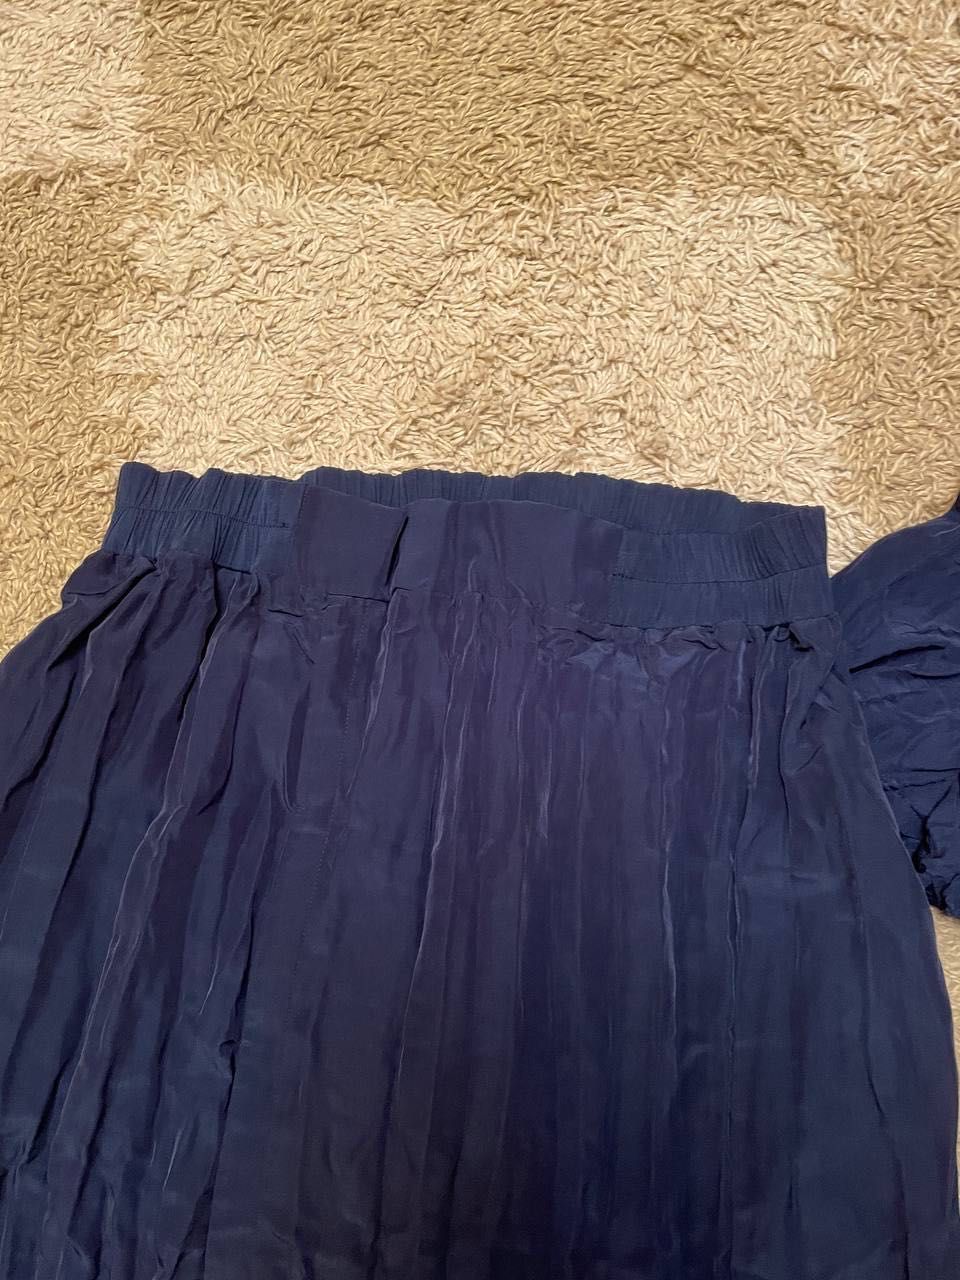 Костюм синий, кофта и юбка в пол (новый)